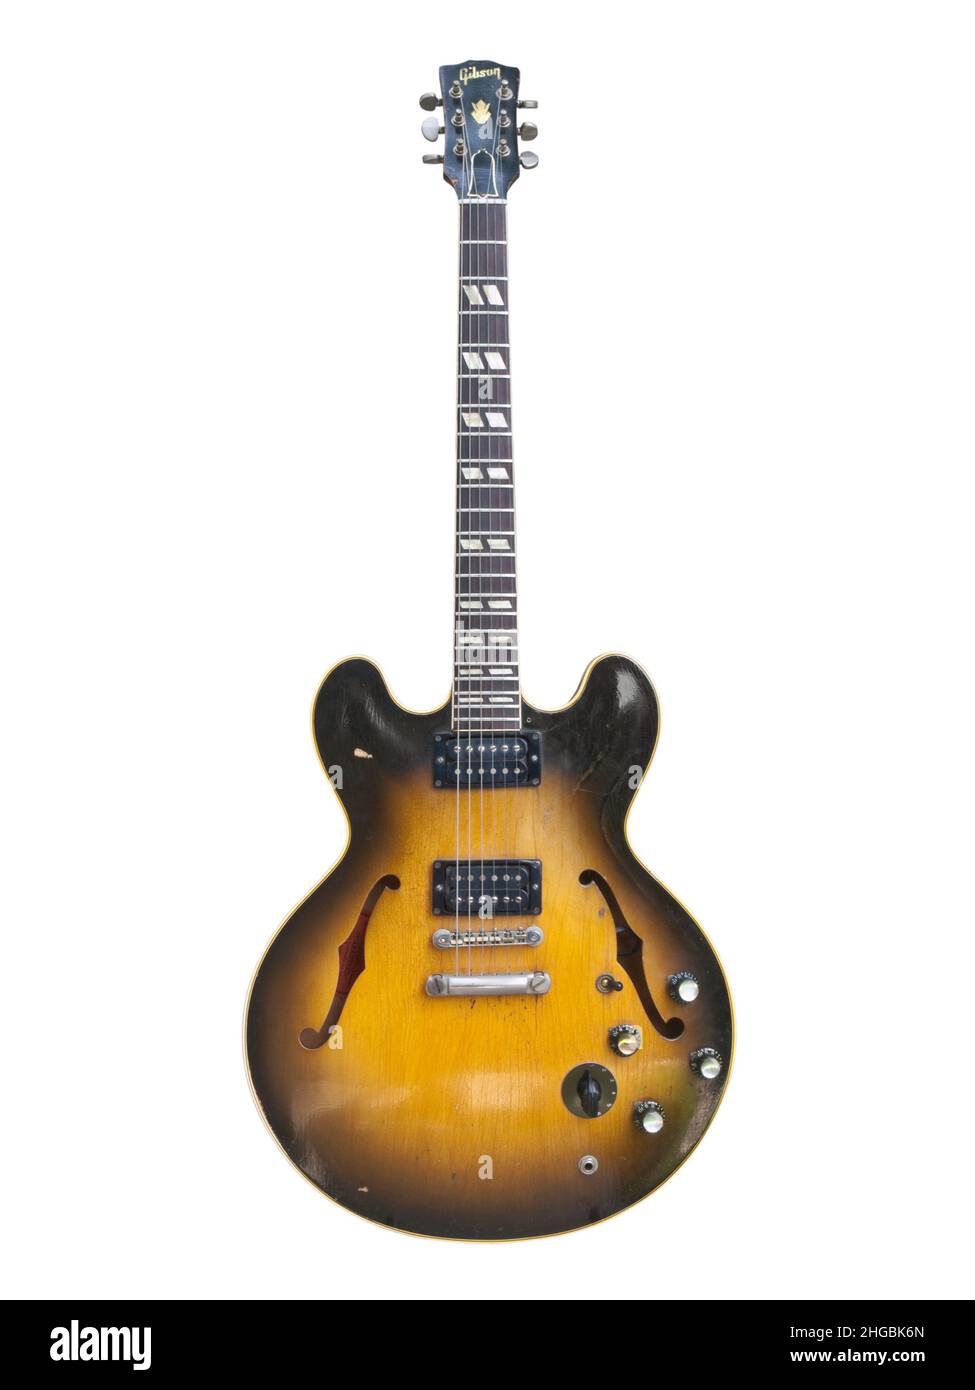 Foto editoriale illustrativa di una chitarra elettrica a corpo cavo Gibson ES 335 vintage 1959 con sfondo bianco il 26 luglio 2009 a Los Angeles, CA. Foto Stock